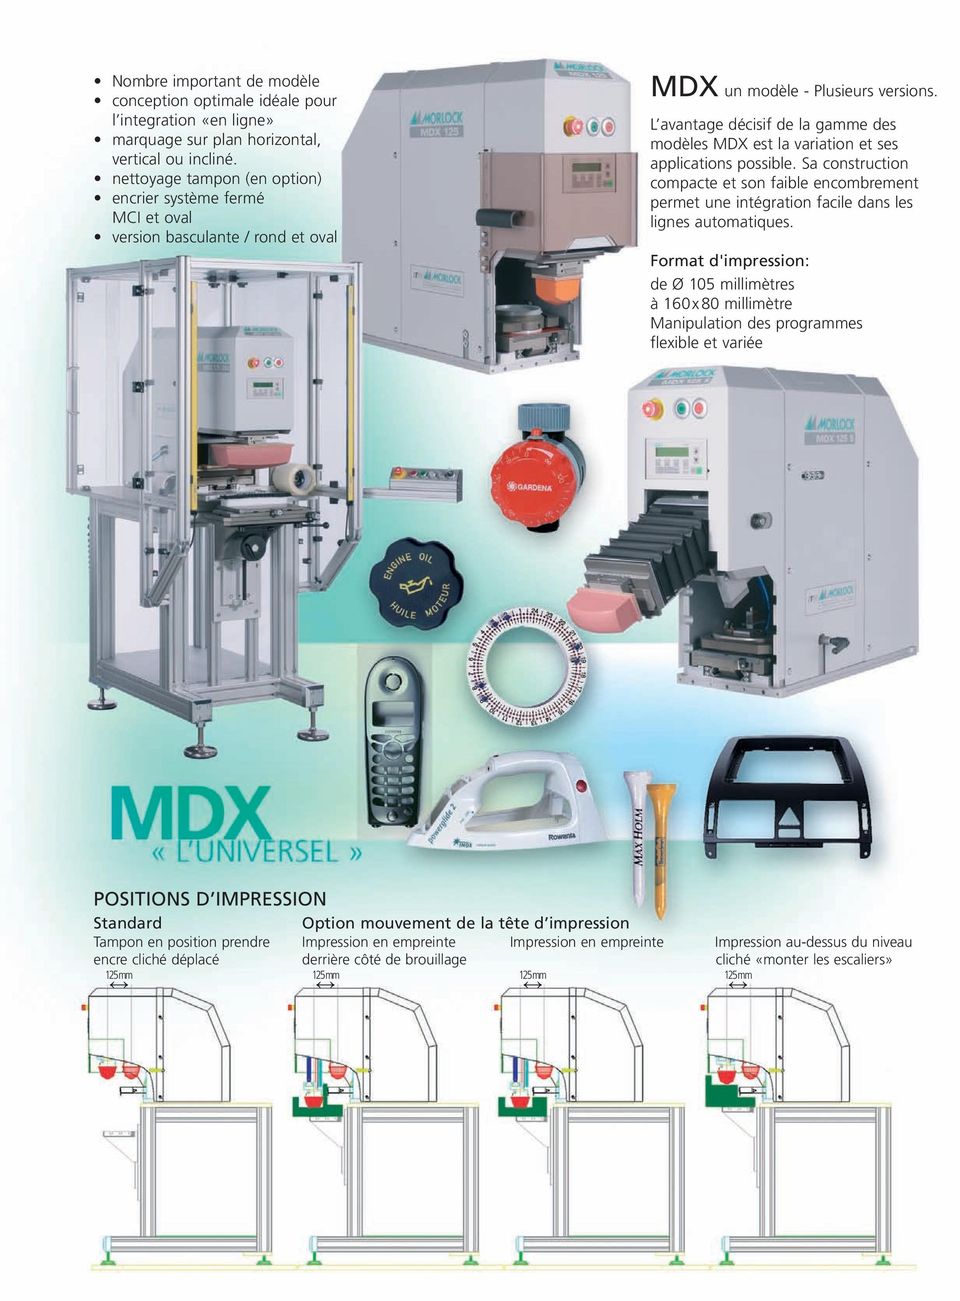 L avantage décisif de la gamme des modèles MDX est la variation et ses applications possible.